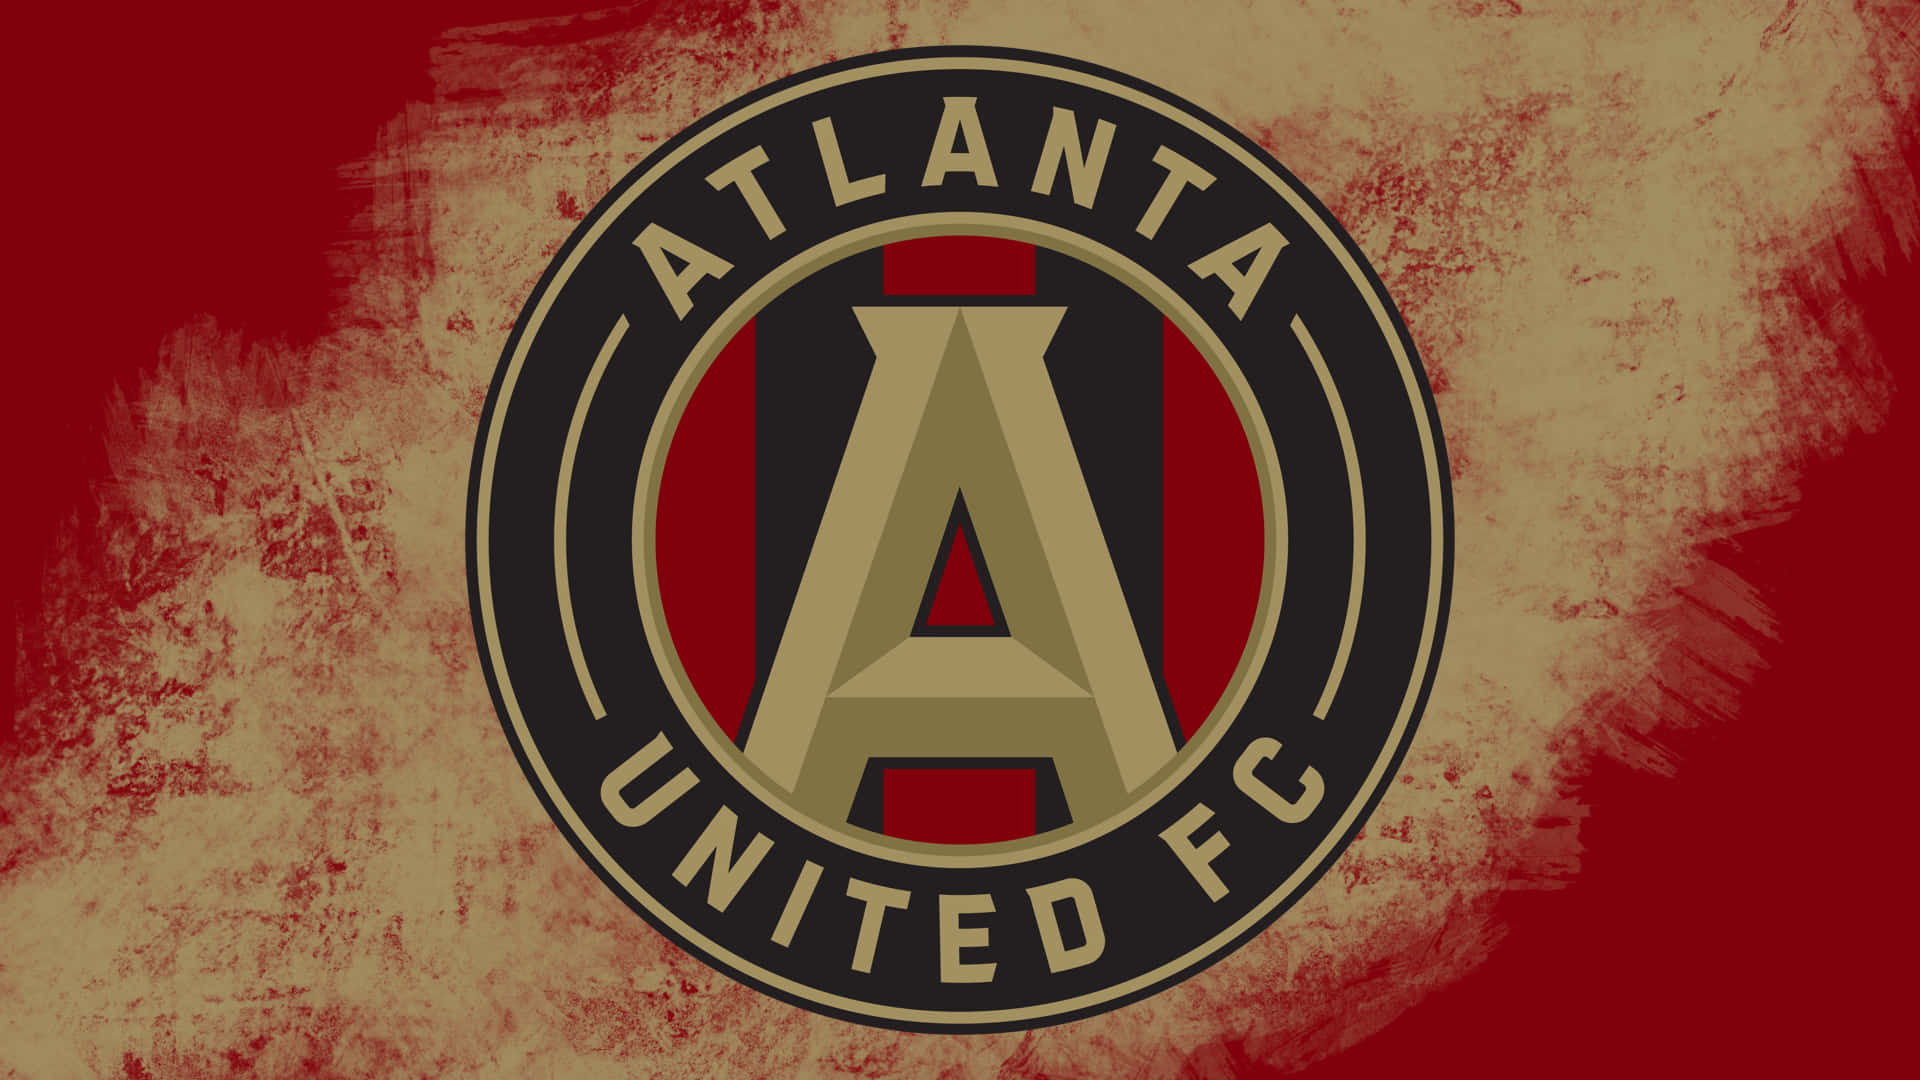 Atlantaunited Fc Logotypen För Amerikanska Professionella Fotbollsklubben I Rött. Wallpaper